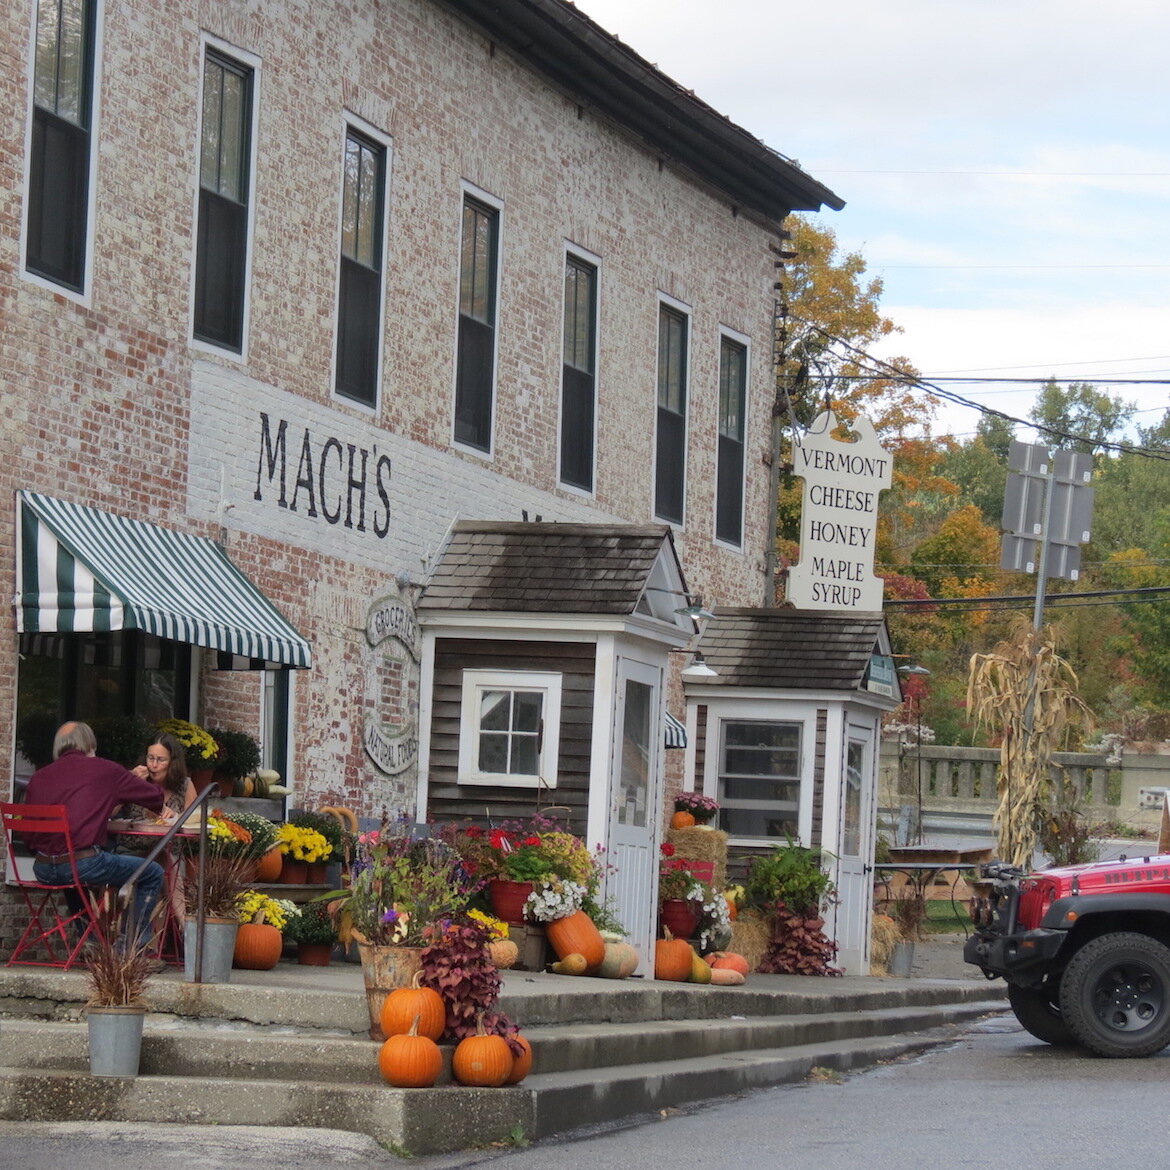 Machs Market in Pawlet Vermont